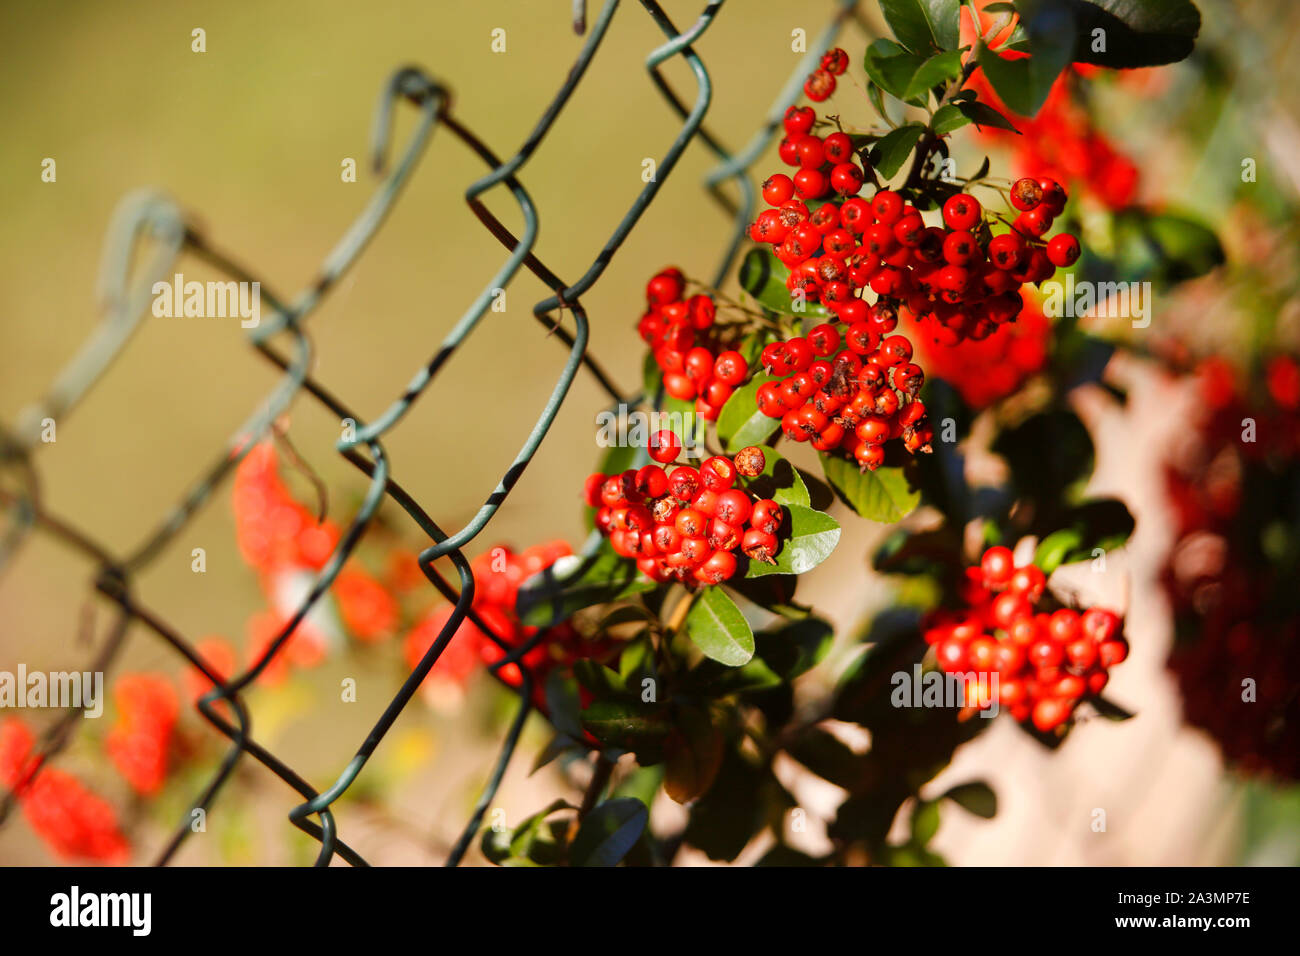 Bacche di colore rosso su una Pyracantha o boccola Firethorn cresce su una catena collegamento recinto. Foto Stock